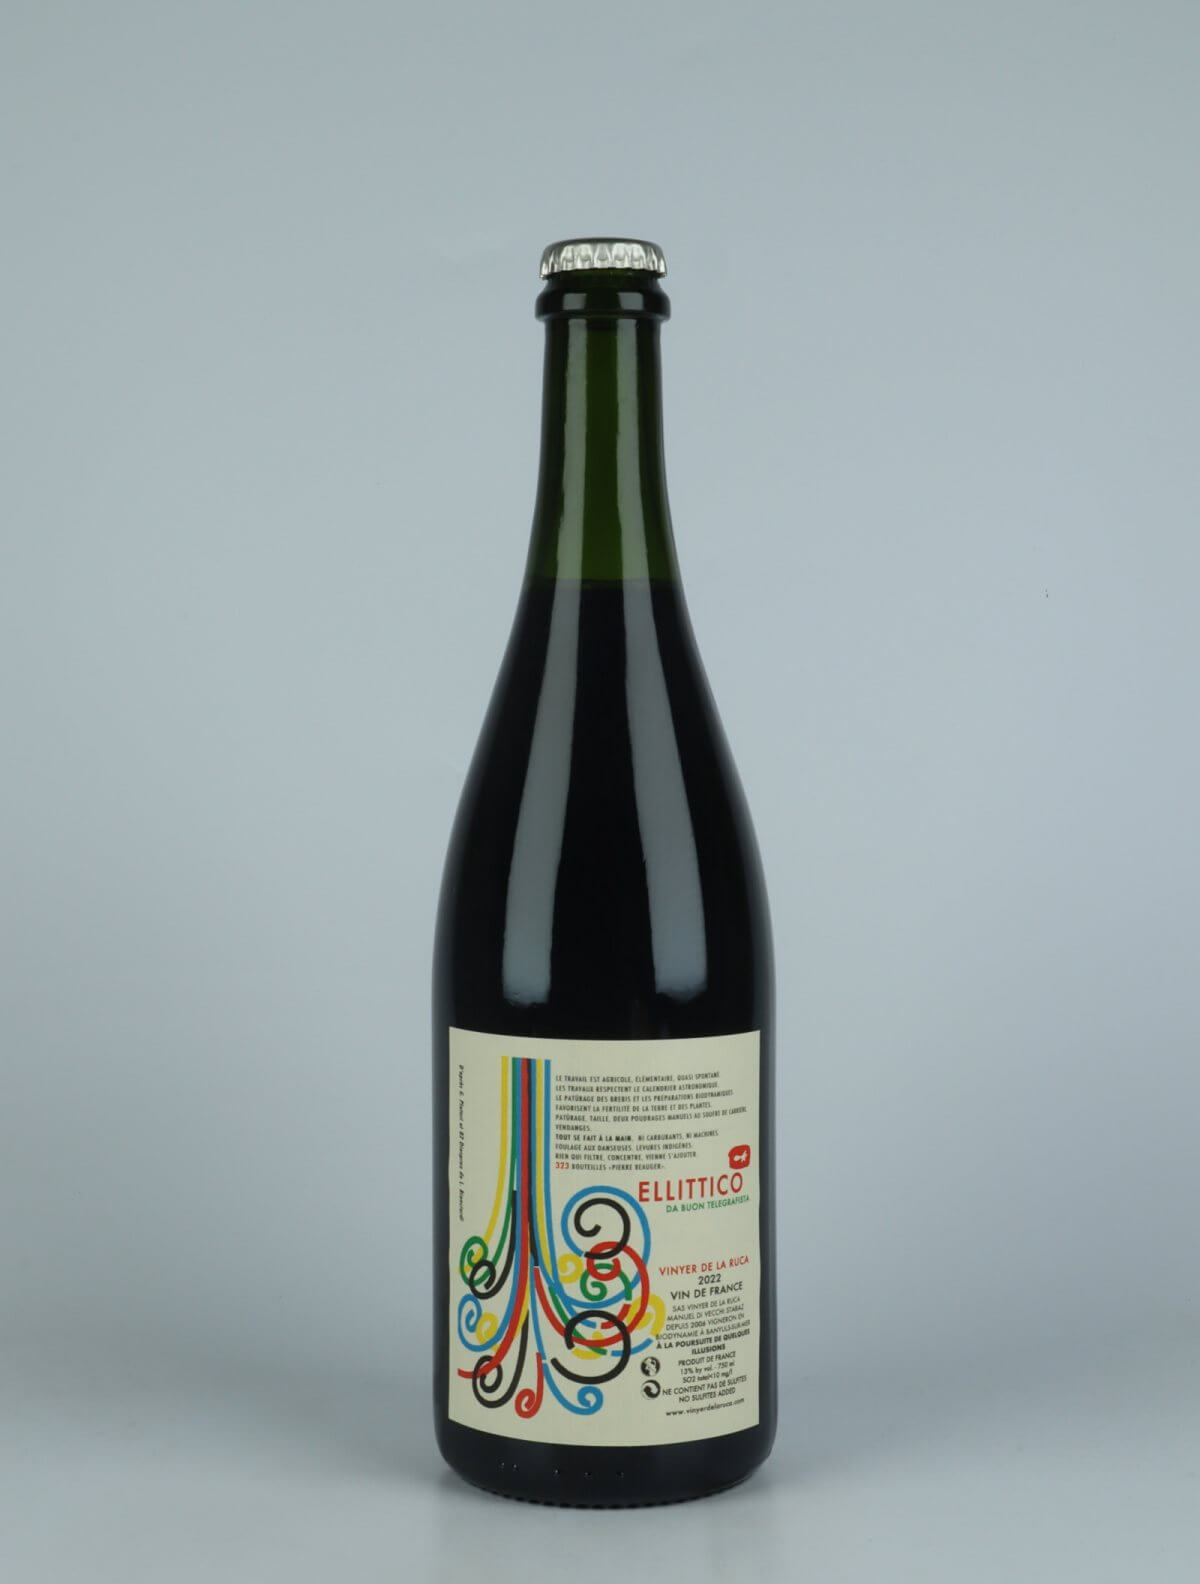 En flaske 2022 Ellittico Rødvin fra Vinyer de la Ruca, Rousillon i Frankrig